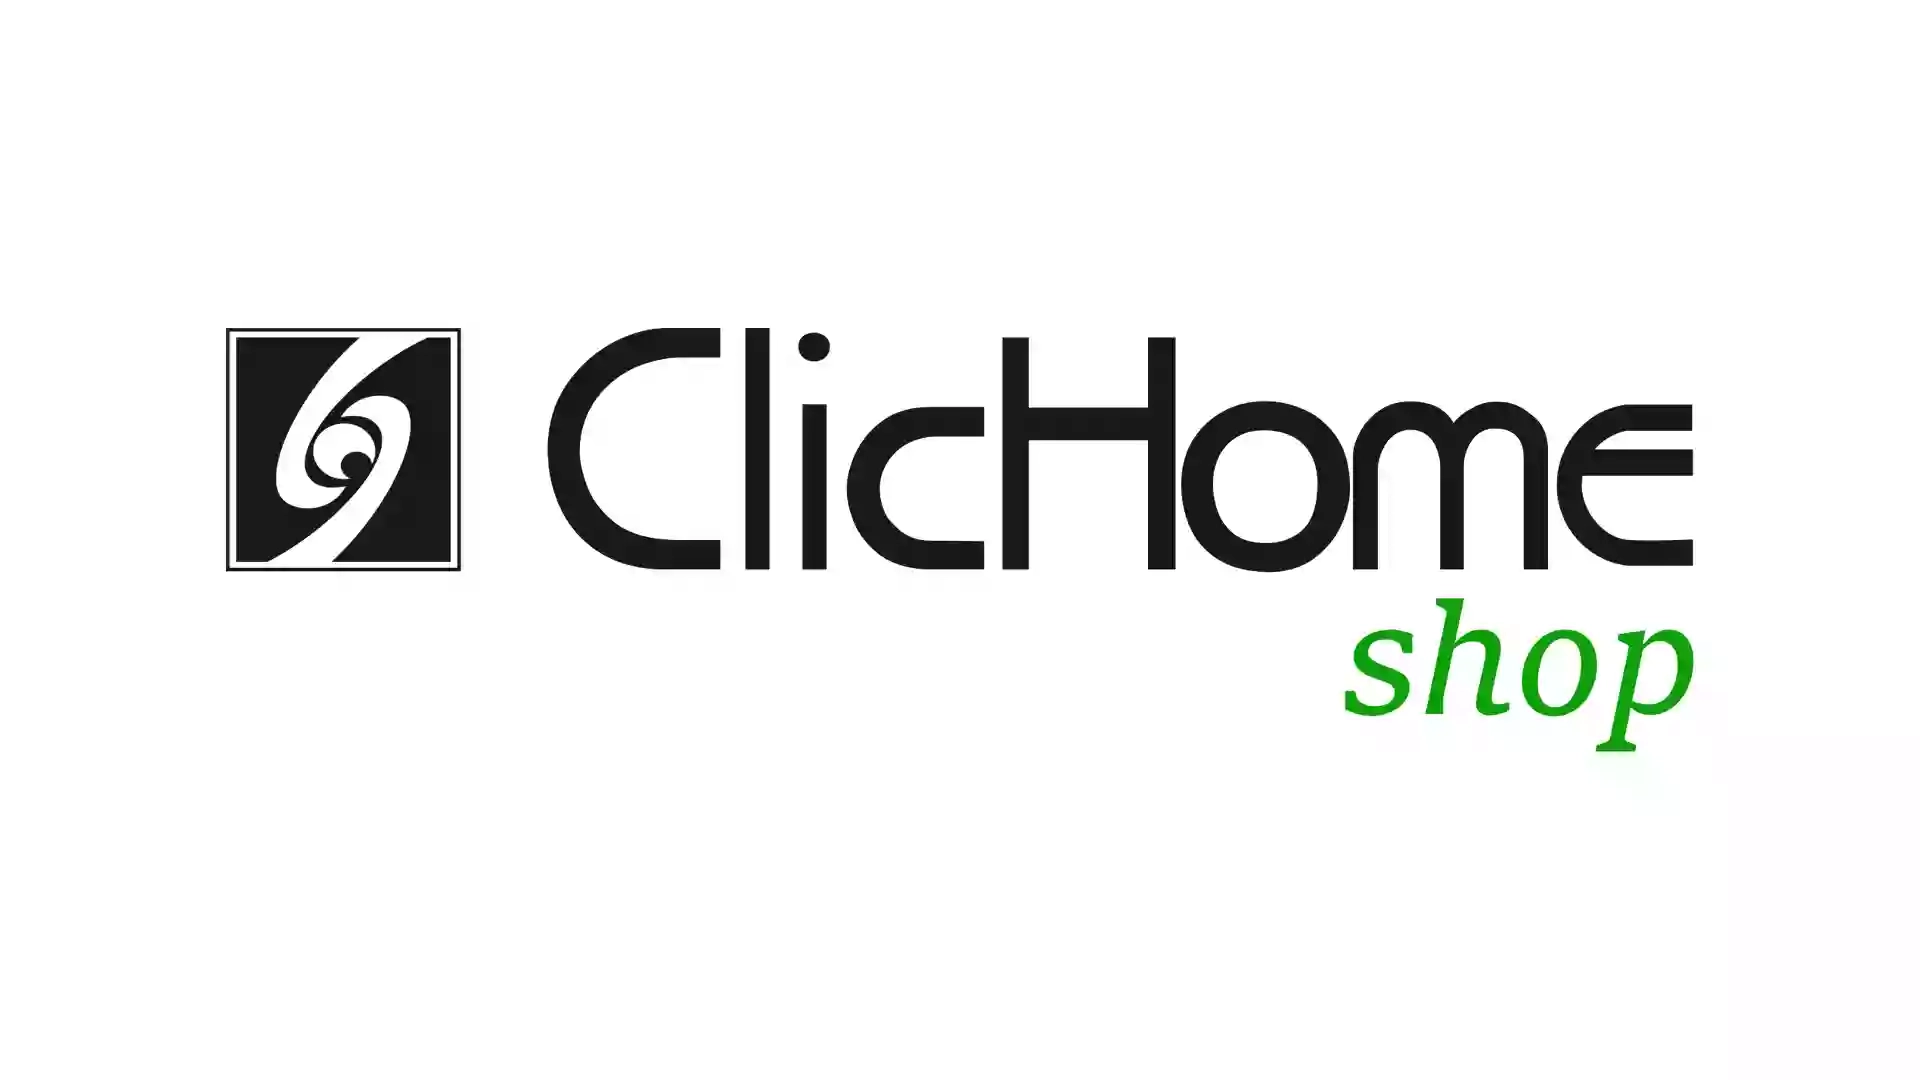 CLICHOME - Domotica e AudioVideo